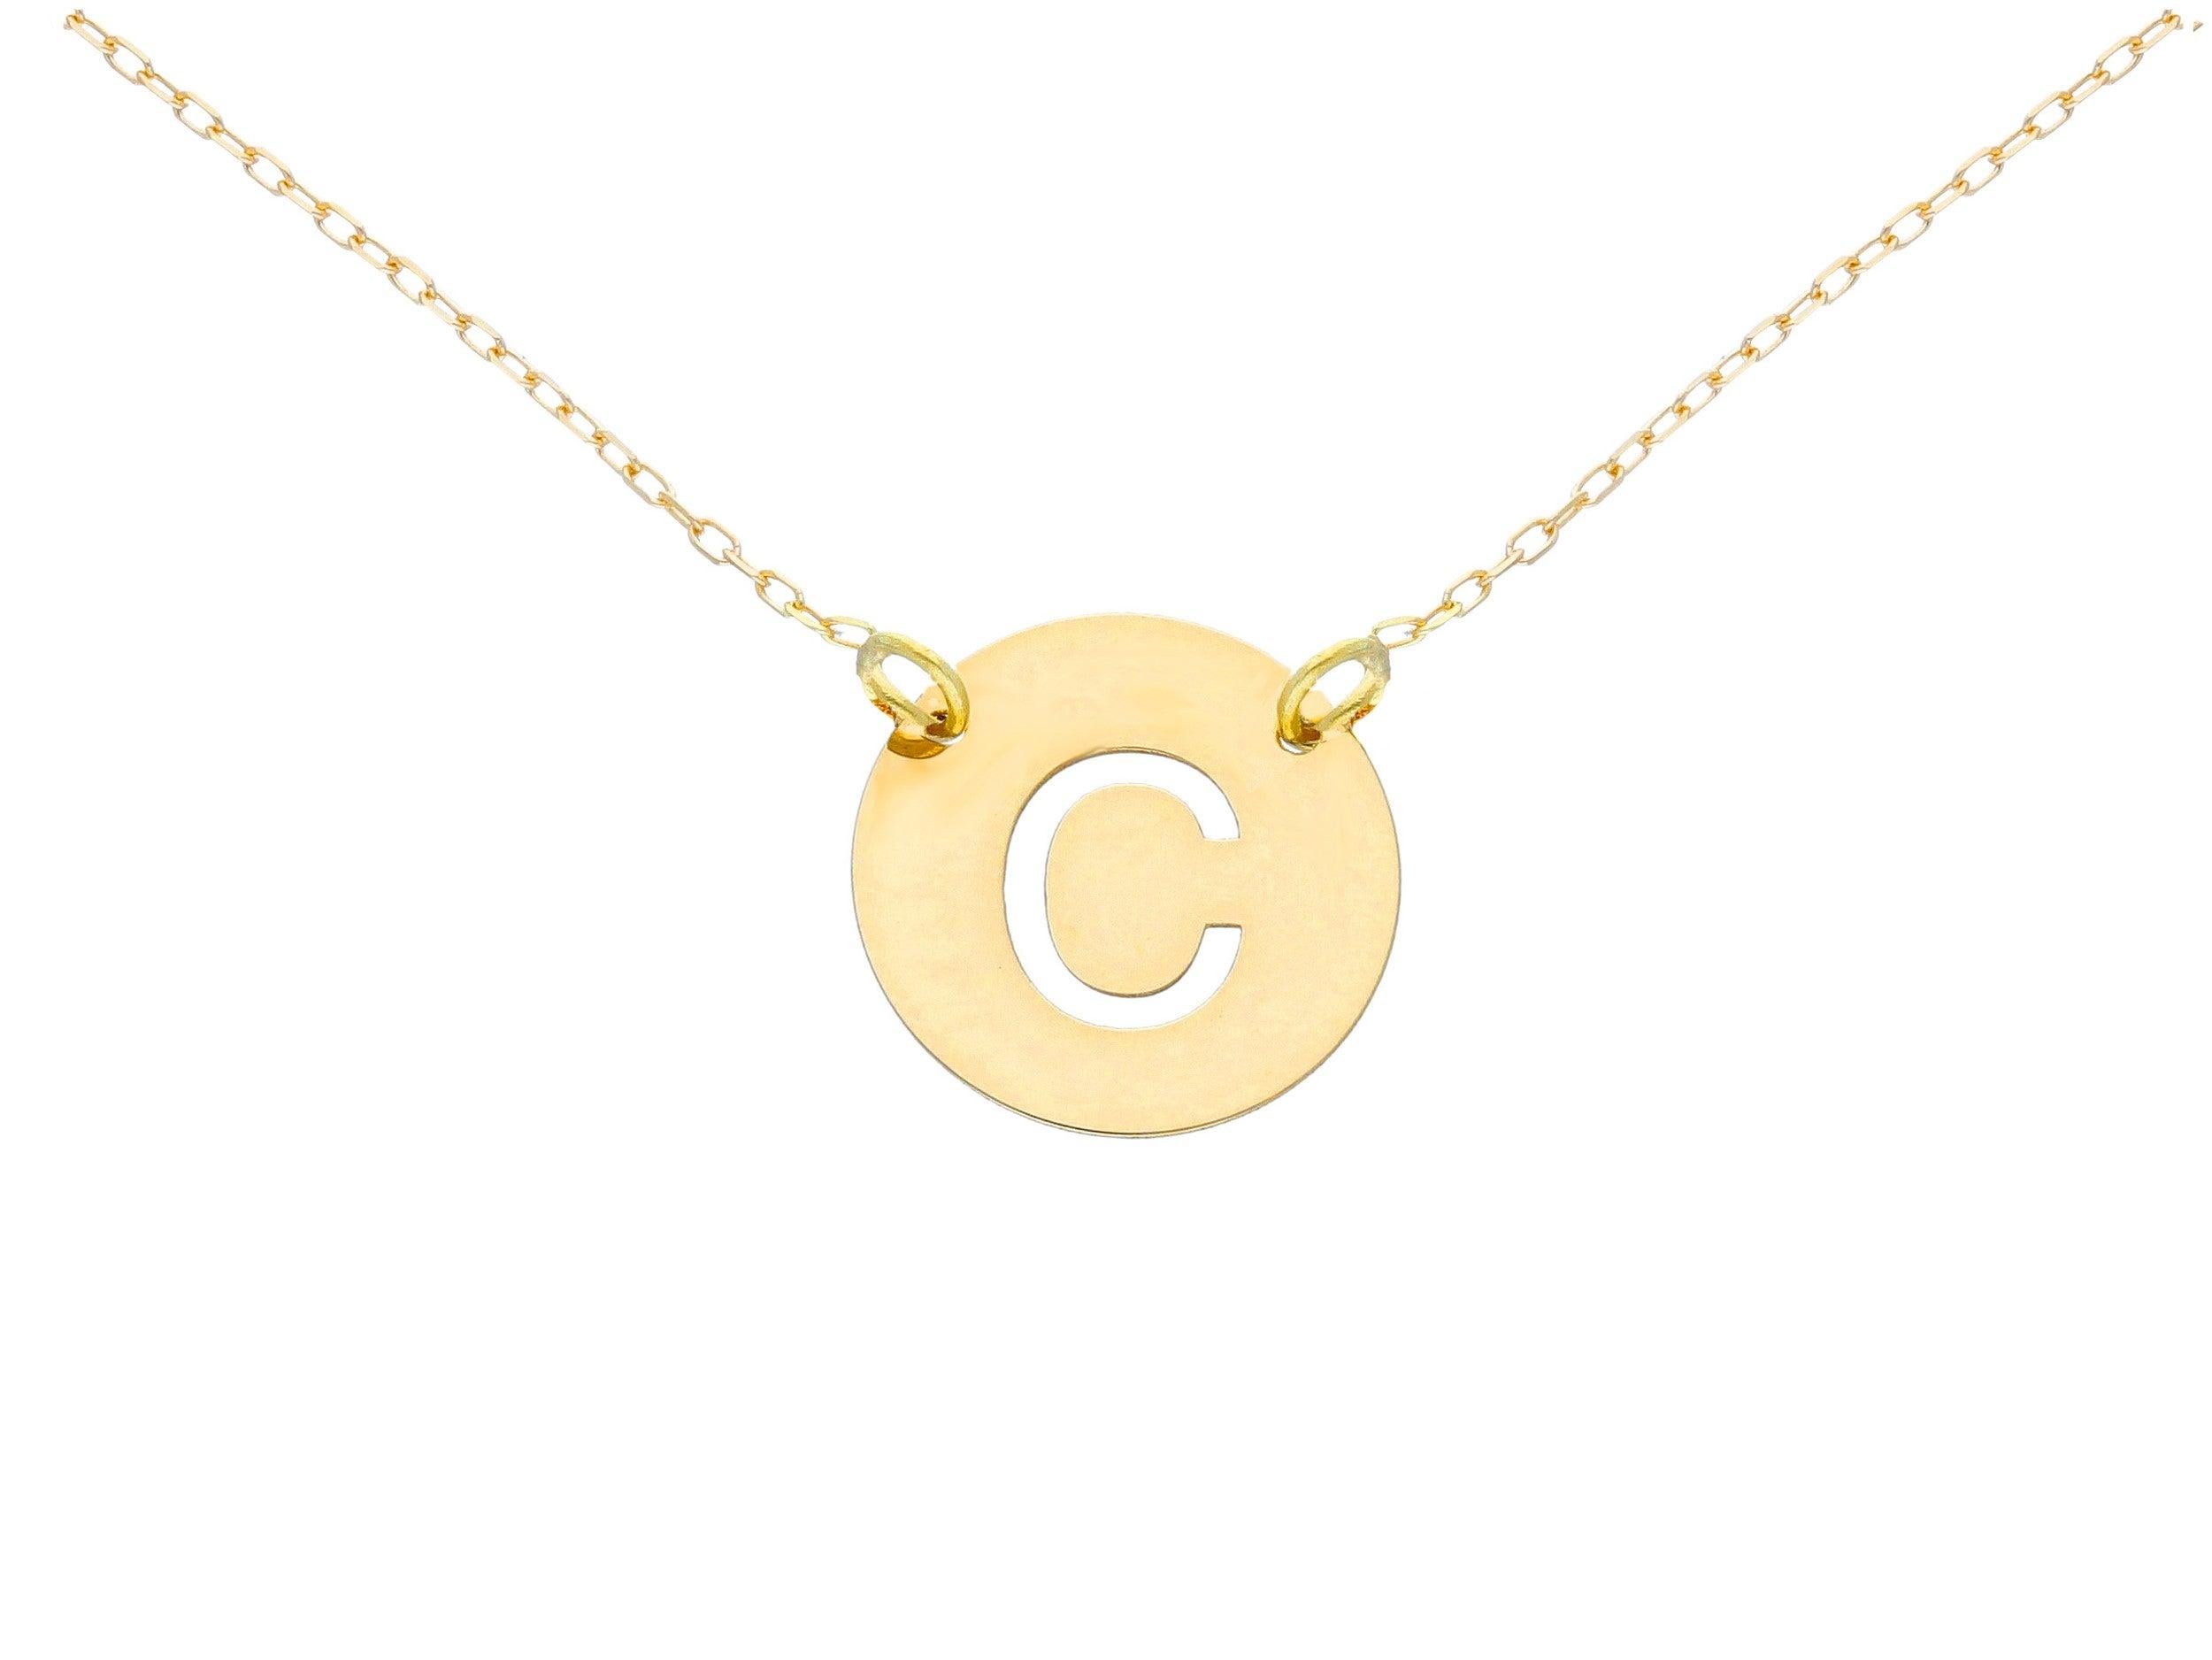 Collier pendentif en chaîne de la lettre B de Pradera en or jaune 18k.

Il pèse 1,7 gramme avec la chaîne, et mesure 44cm/17,3 in.
Il est fabriqué avec de l'or recyclé à 100 %, dont les bords sont souples pour un ajustement confortable.
Également